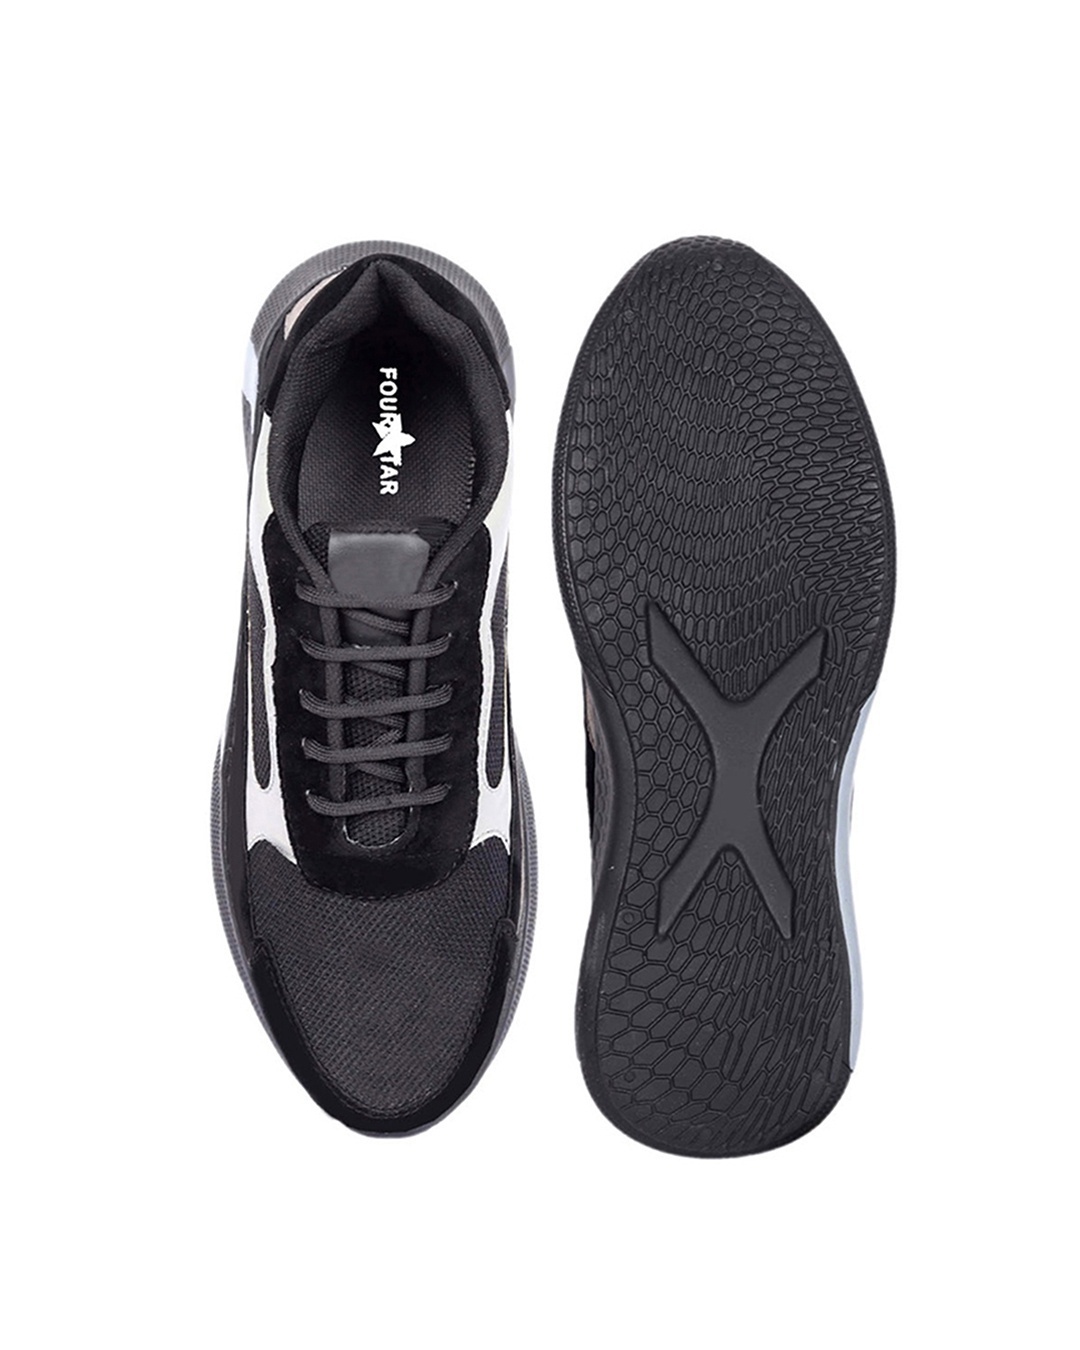 Shop Men's Black Color Block Casual Shoes